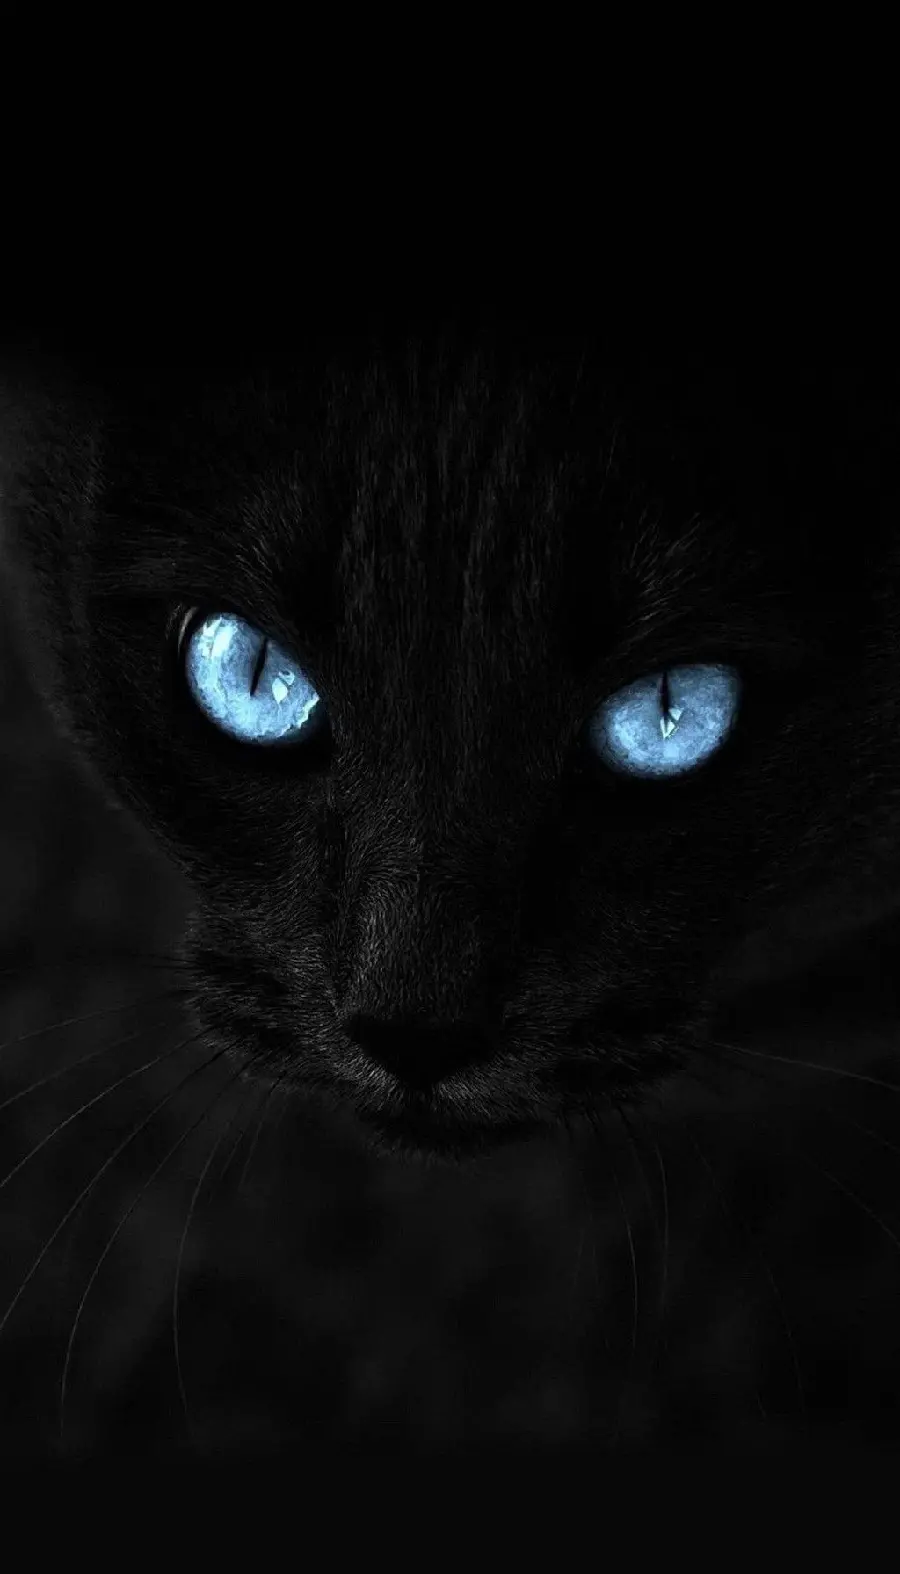 عکس وحشتناک از گربه مشکی غضبناک با چشمان آبی روشن